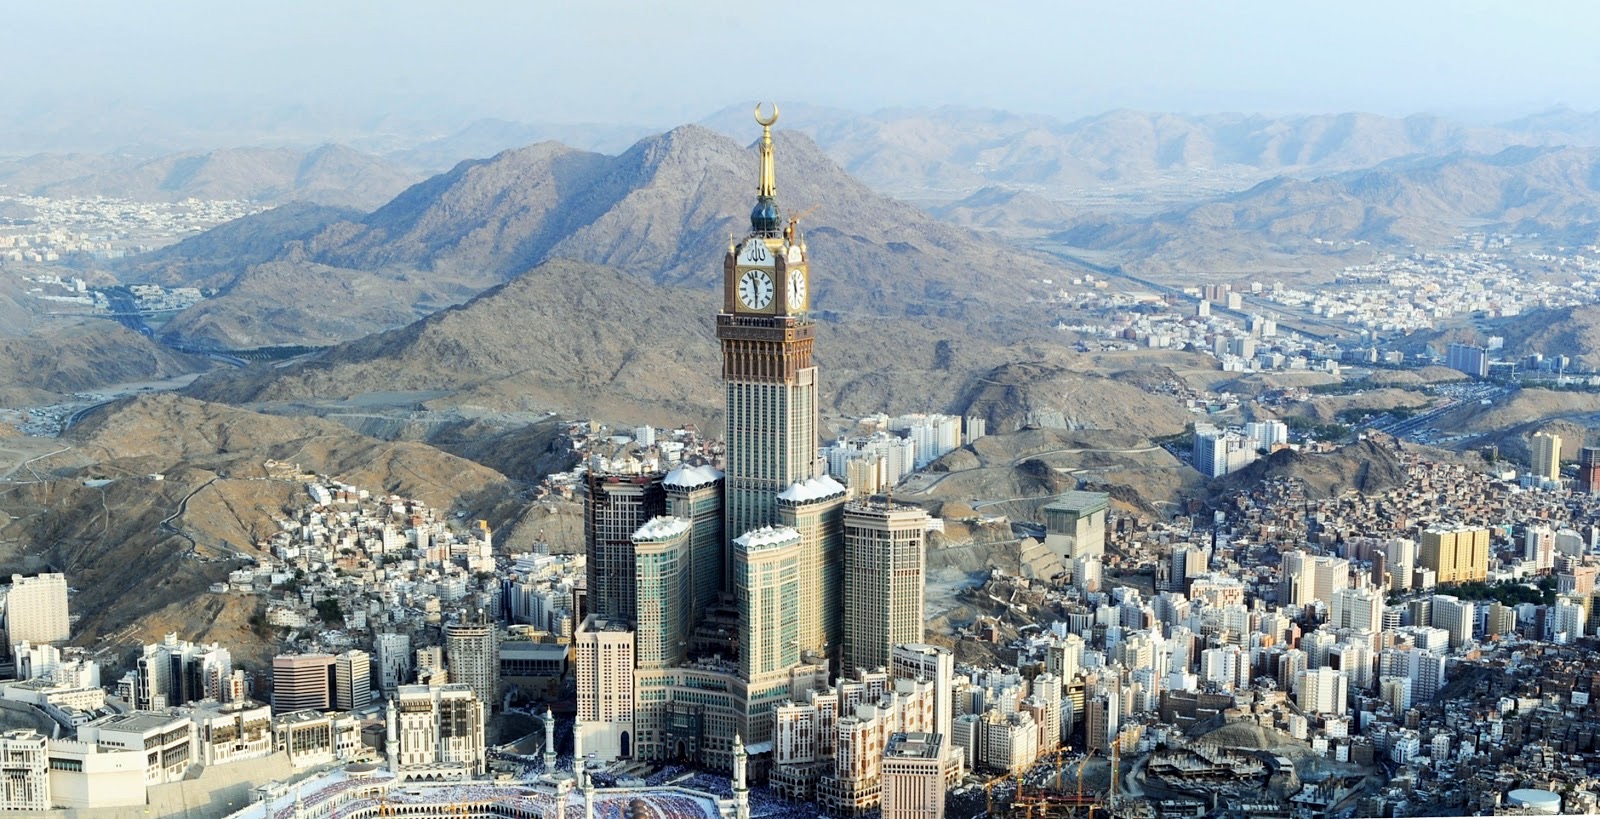 Часы в саудовской аравии. Абрадж Аль-Бейт Мекка. Часовая башня Абрадж Аль-Бейт. Брадж Аль-Бейт, Мекка, Саудовская Аравия. Аравия город Мекка.